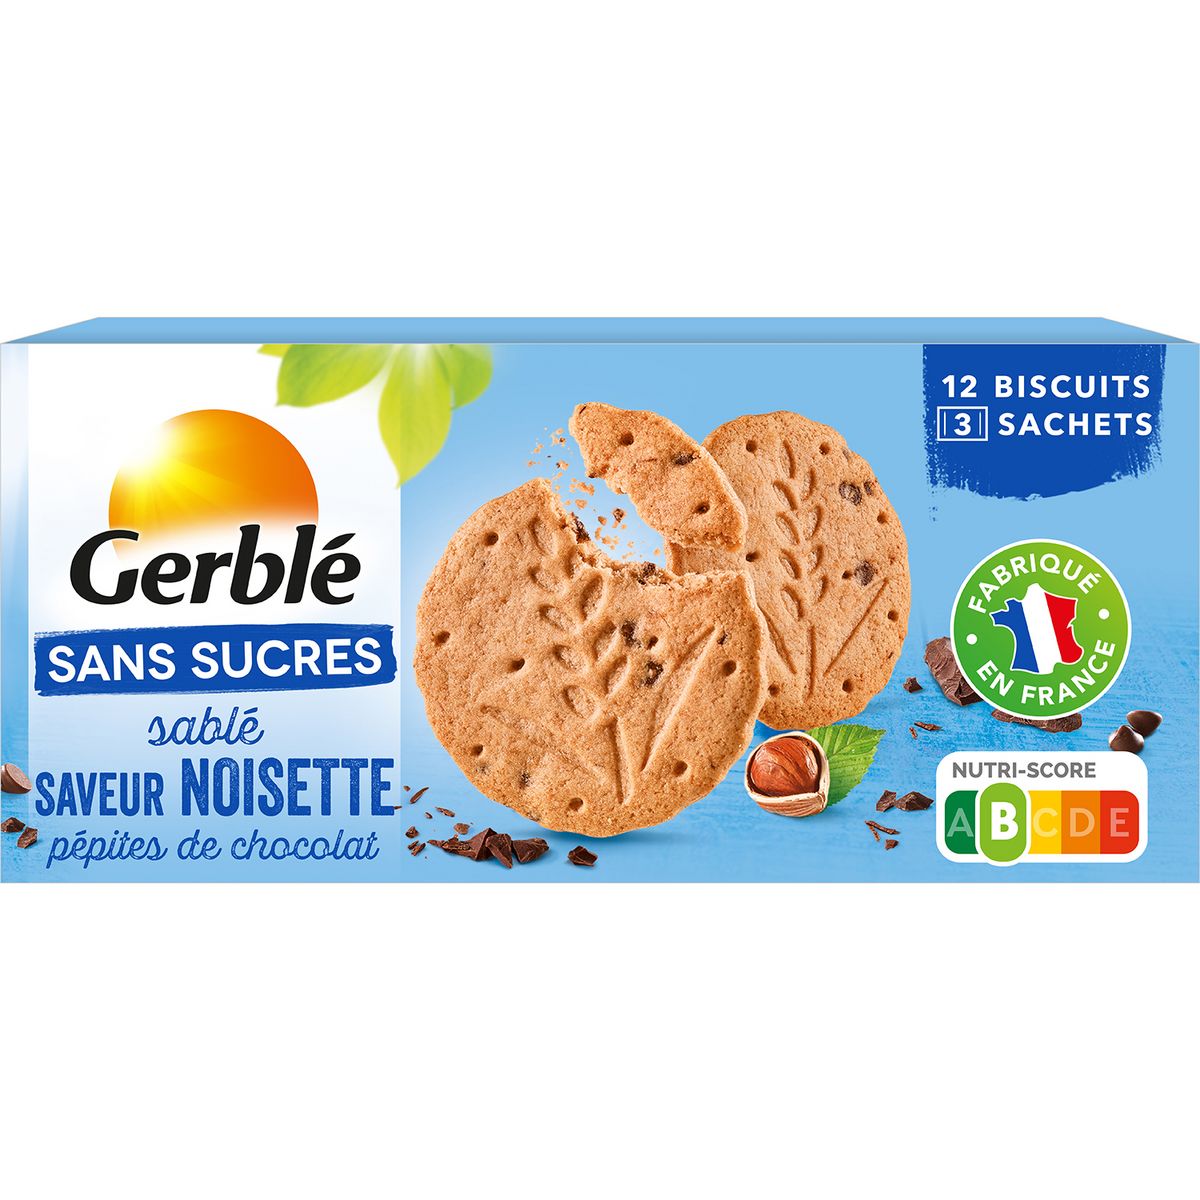 GERBLE Biscuits sablés saveur noisette avec pépites de chocolat sachets fraîcheur 3 sachets 132g